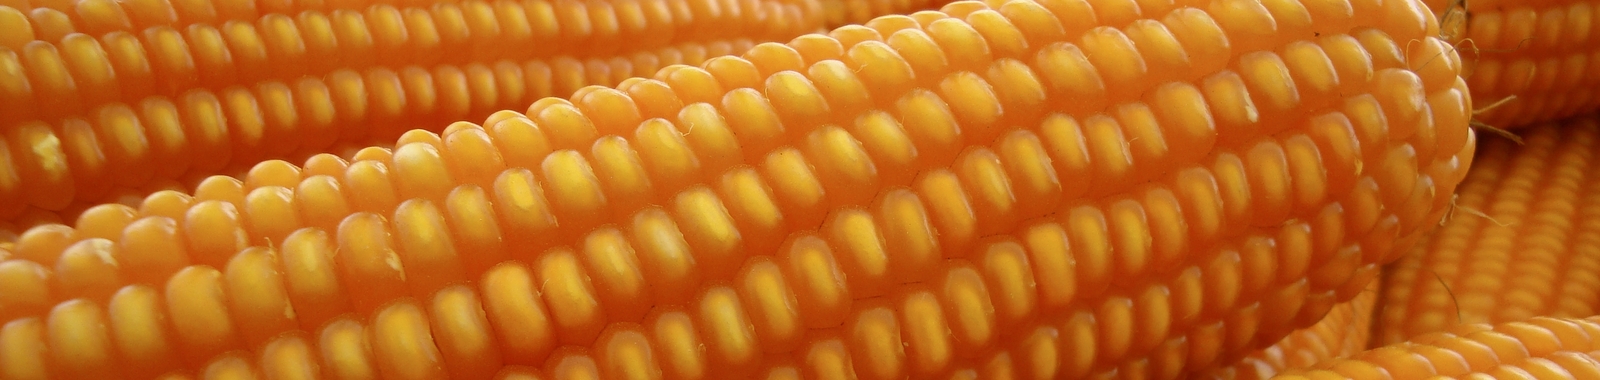 Resistencia al encamado en el maíz